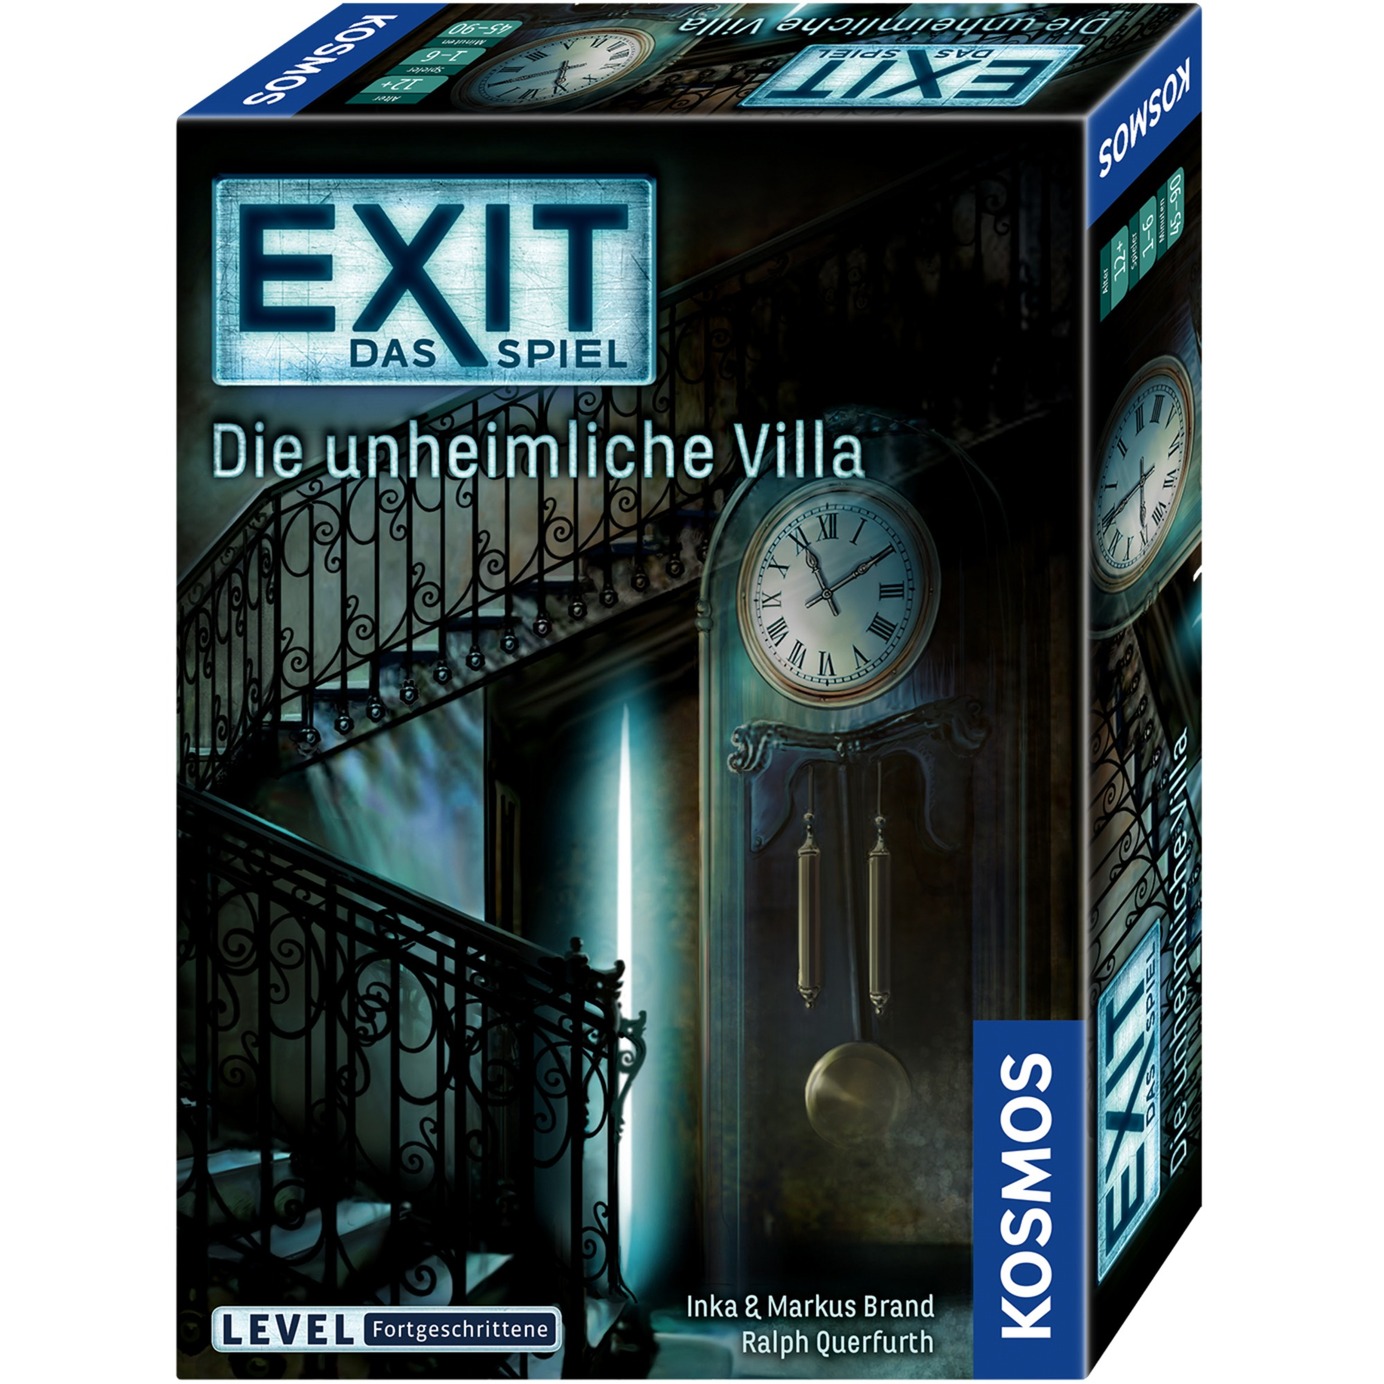 Image of Alternate - EXIT - Das Spiel - Die unheimliche Villa, Partyspiel online einkaufen bei Alternate